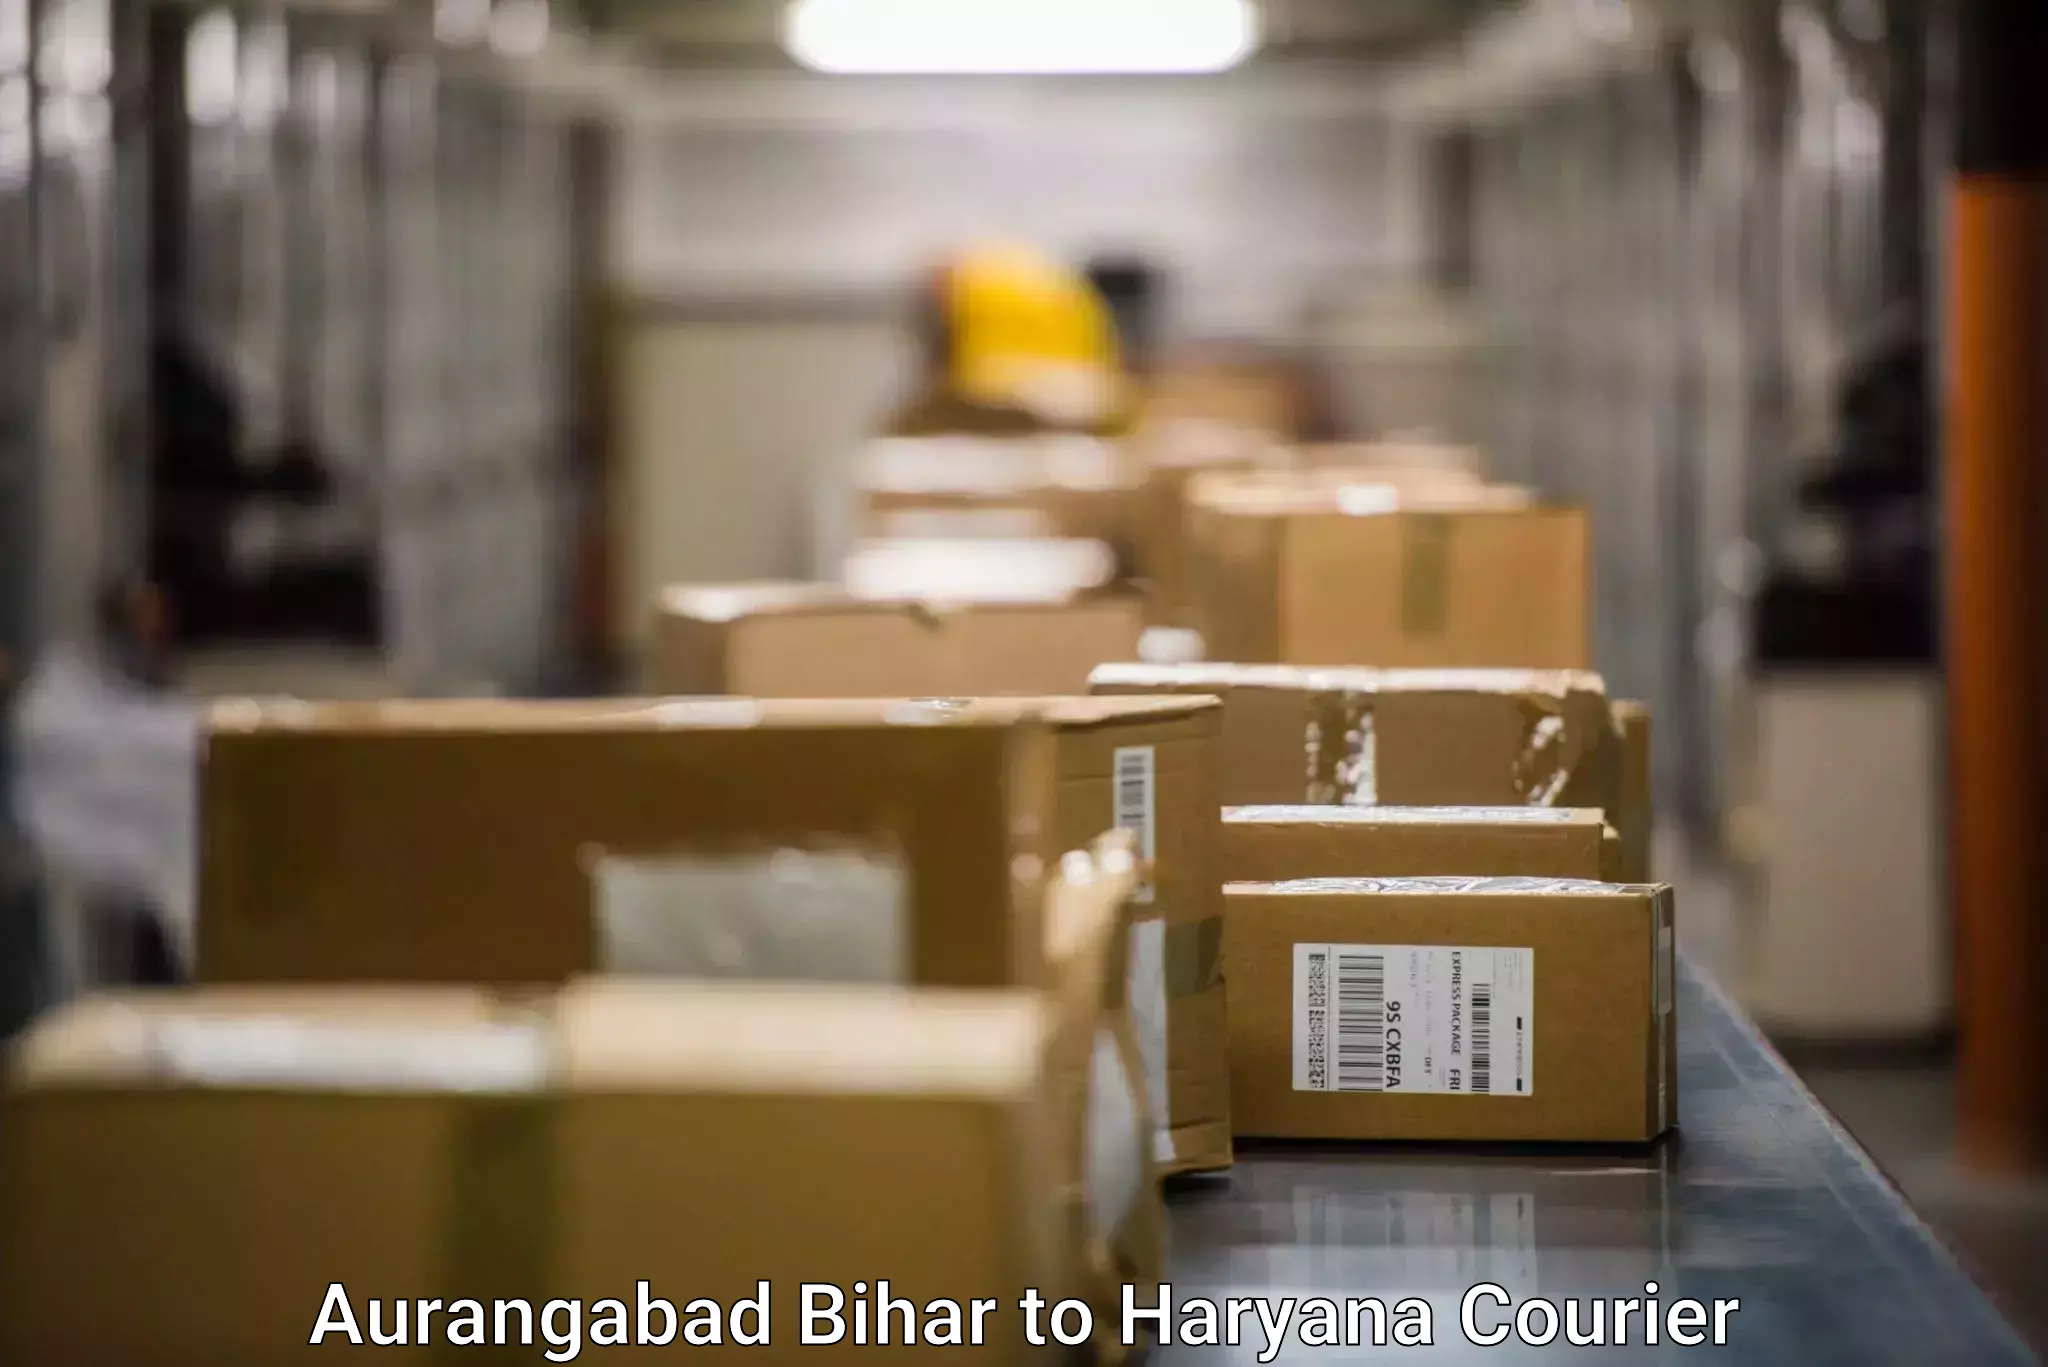 Customer-centric shipping Aurangabad Bihar to Gurgaon